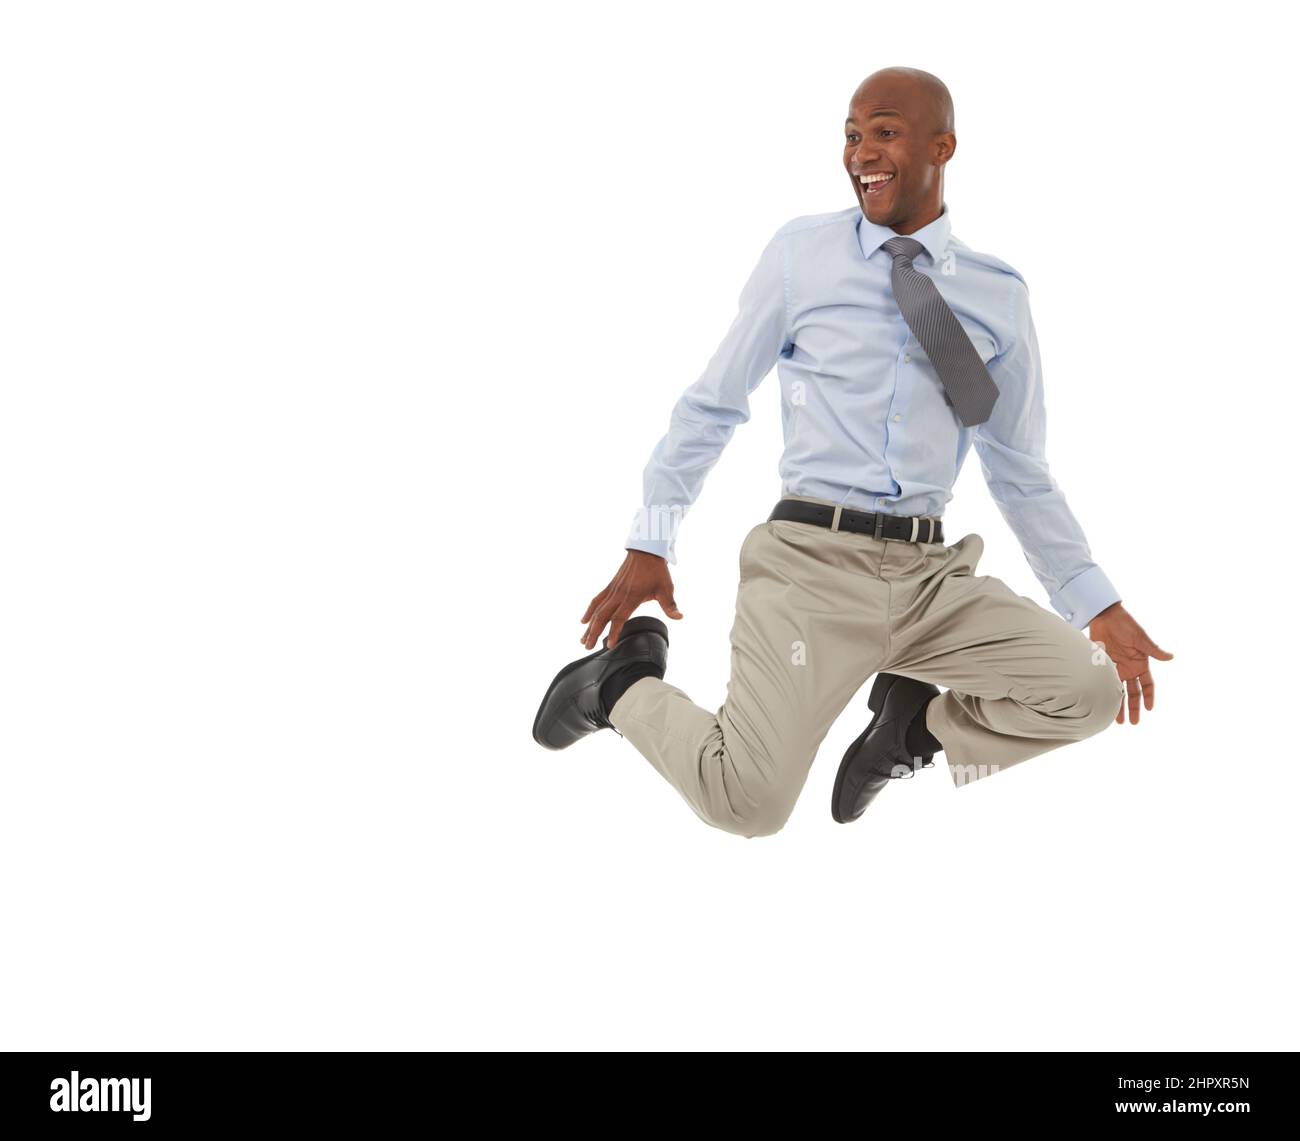 HES in cima al mondo. Un uomo d’affari afro-americano che salta nell’aria. Foto Stock